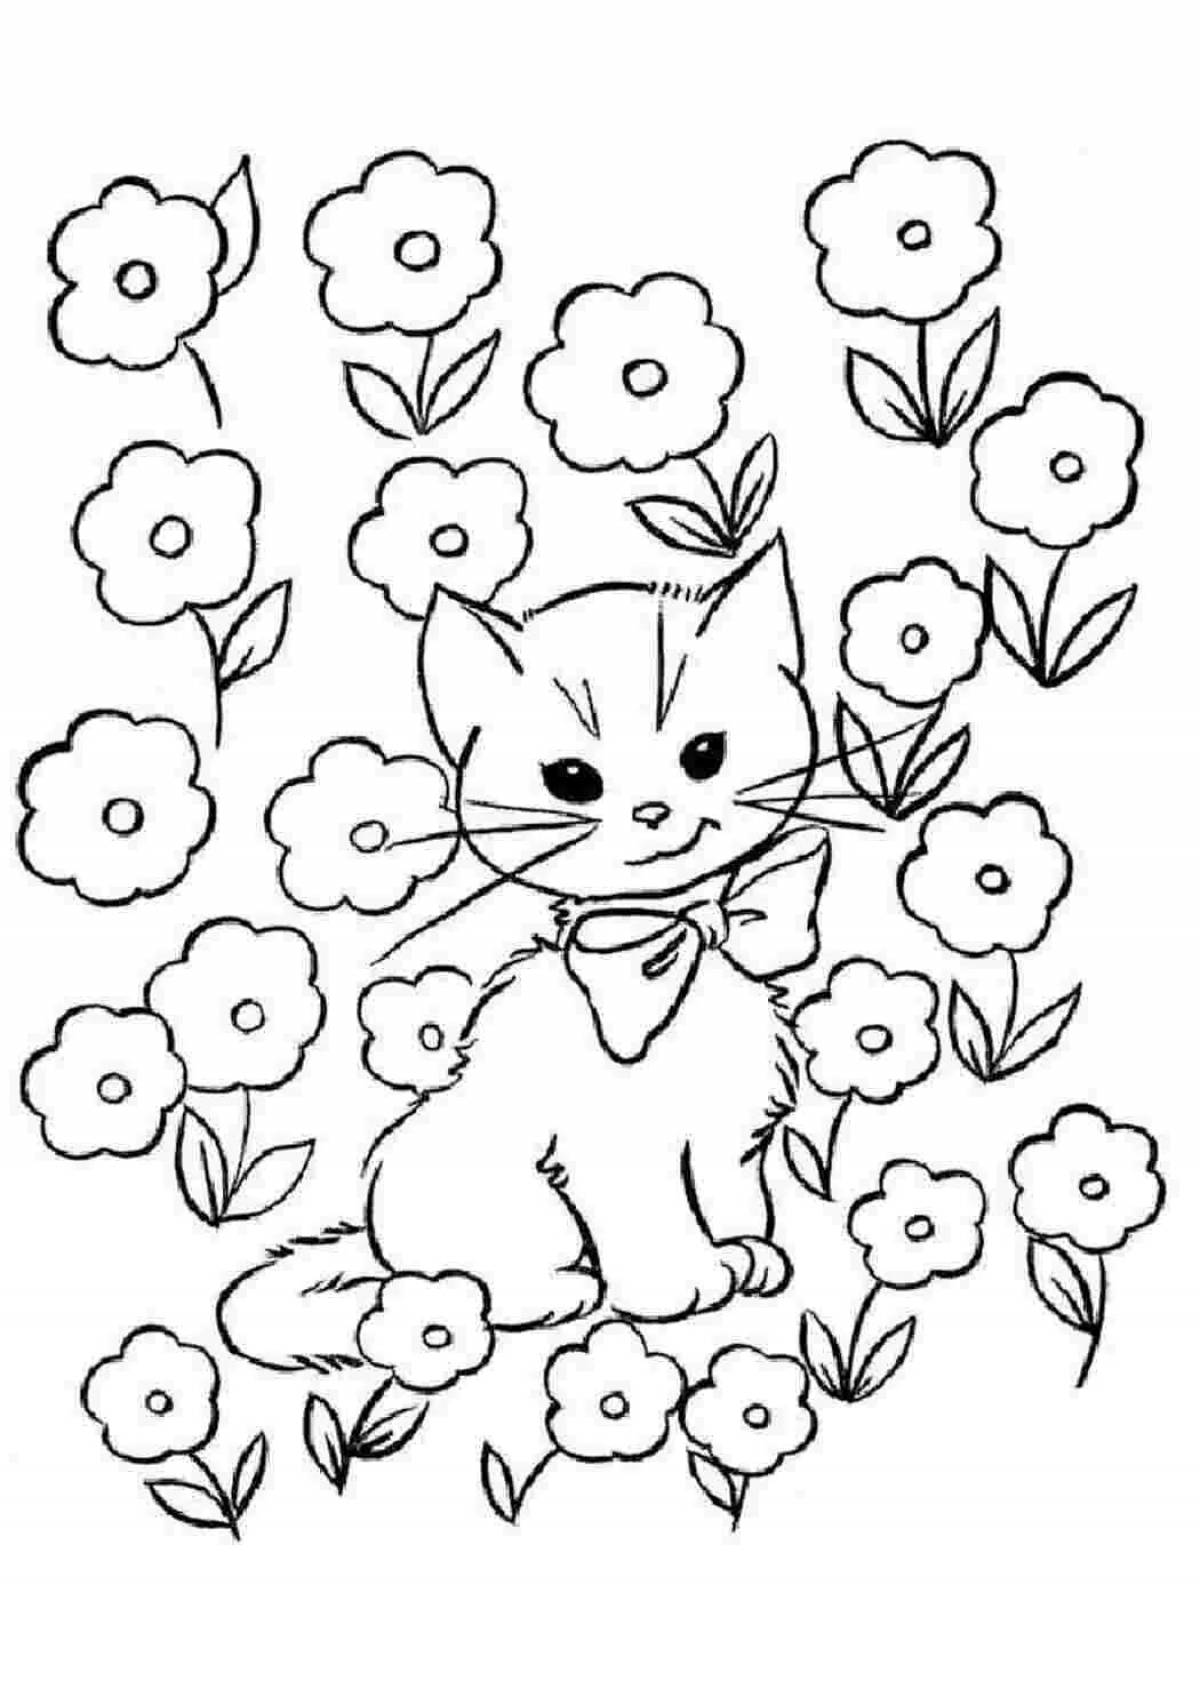 Экзотическая кошка с цветами